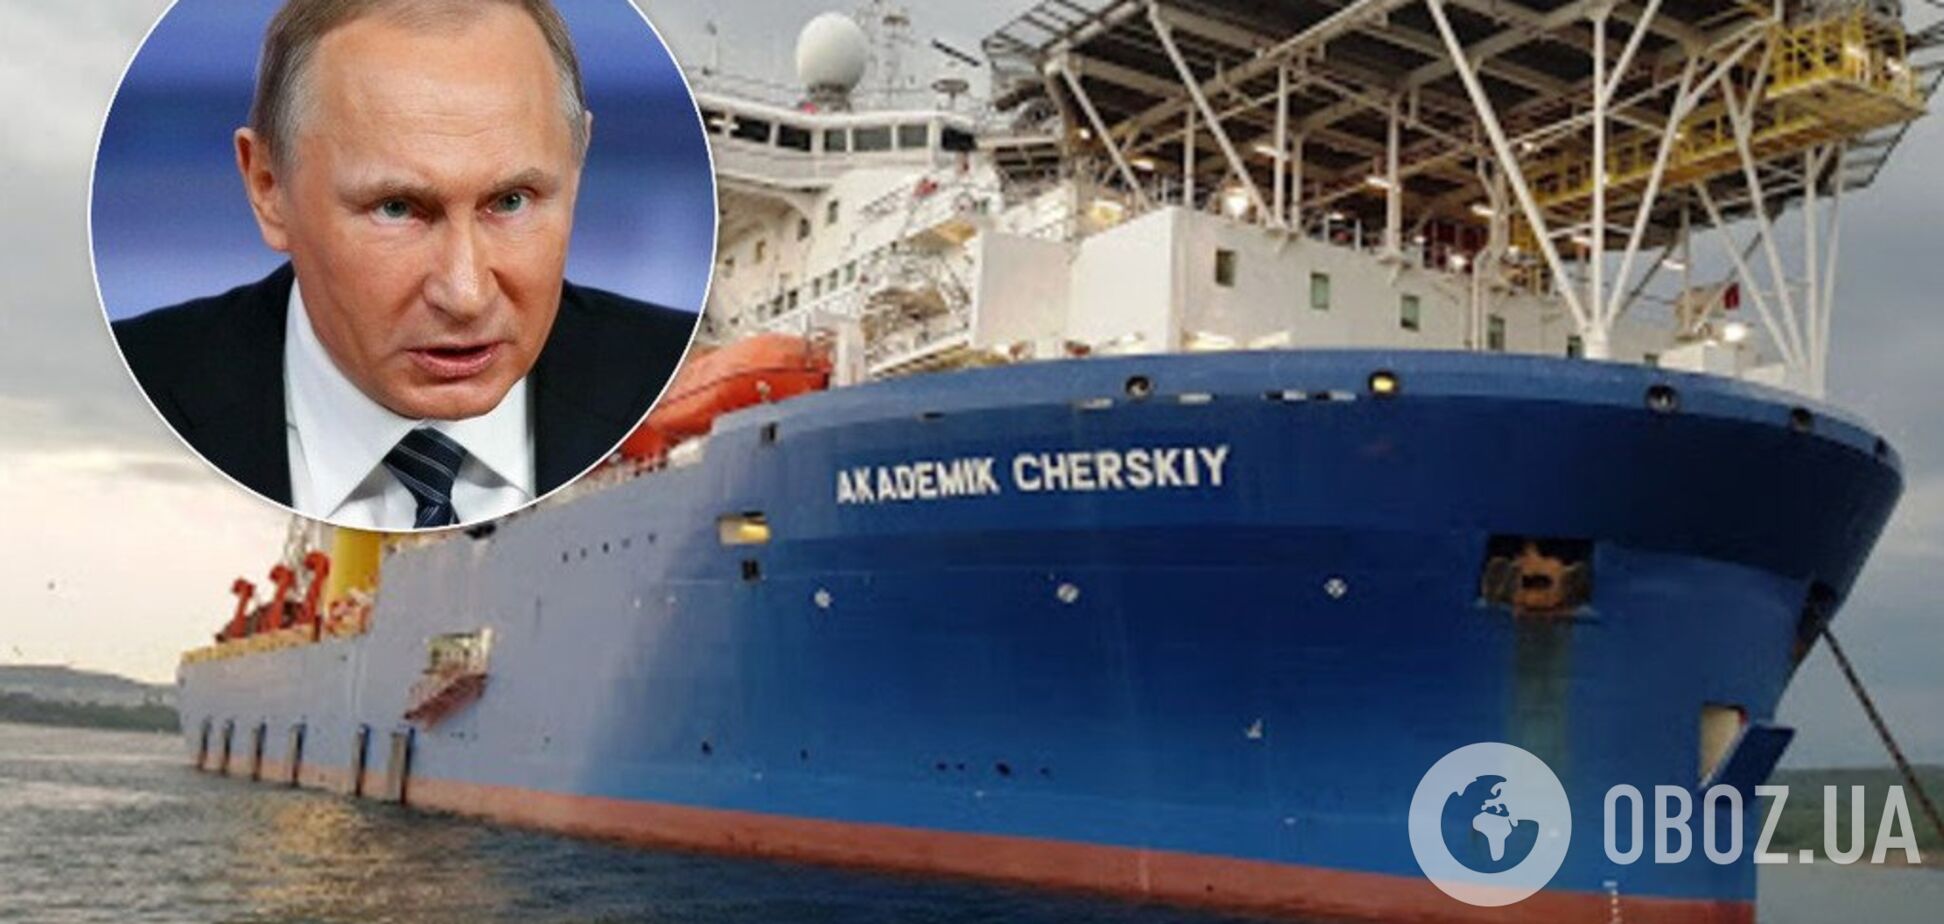 Санкцій не уникнути: у Росії визнали провал із 'газопроводом Путіна'